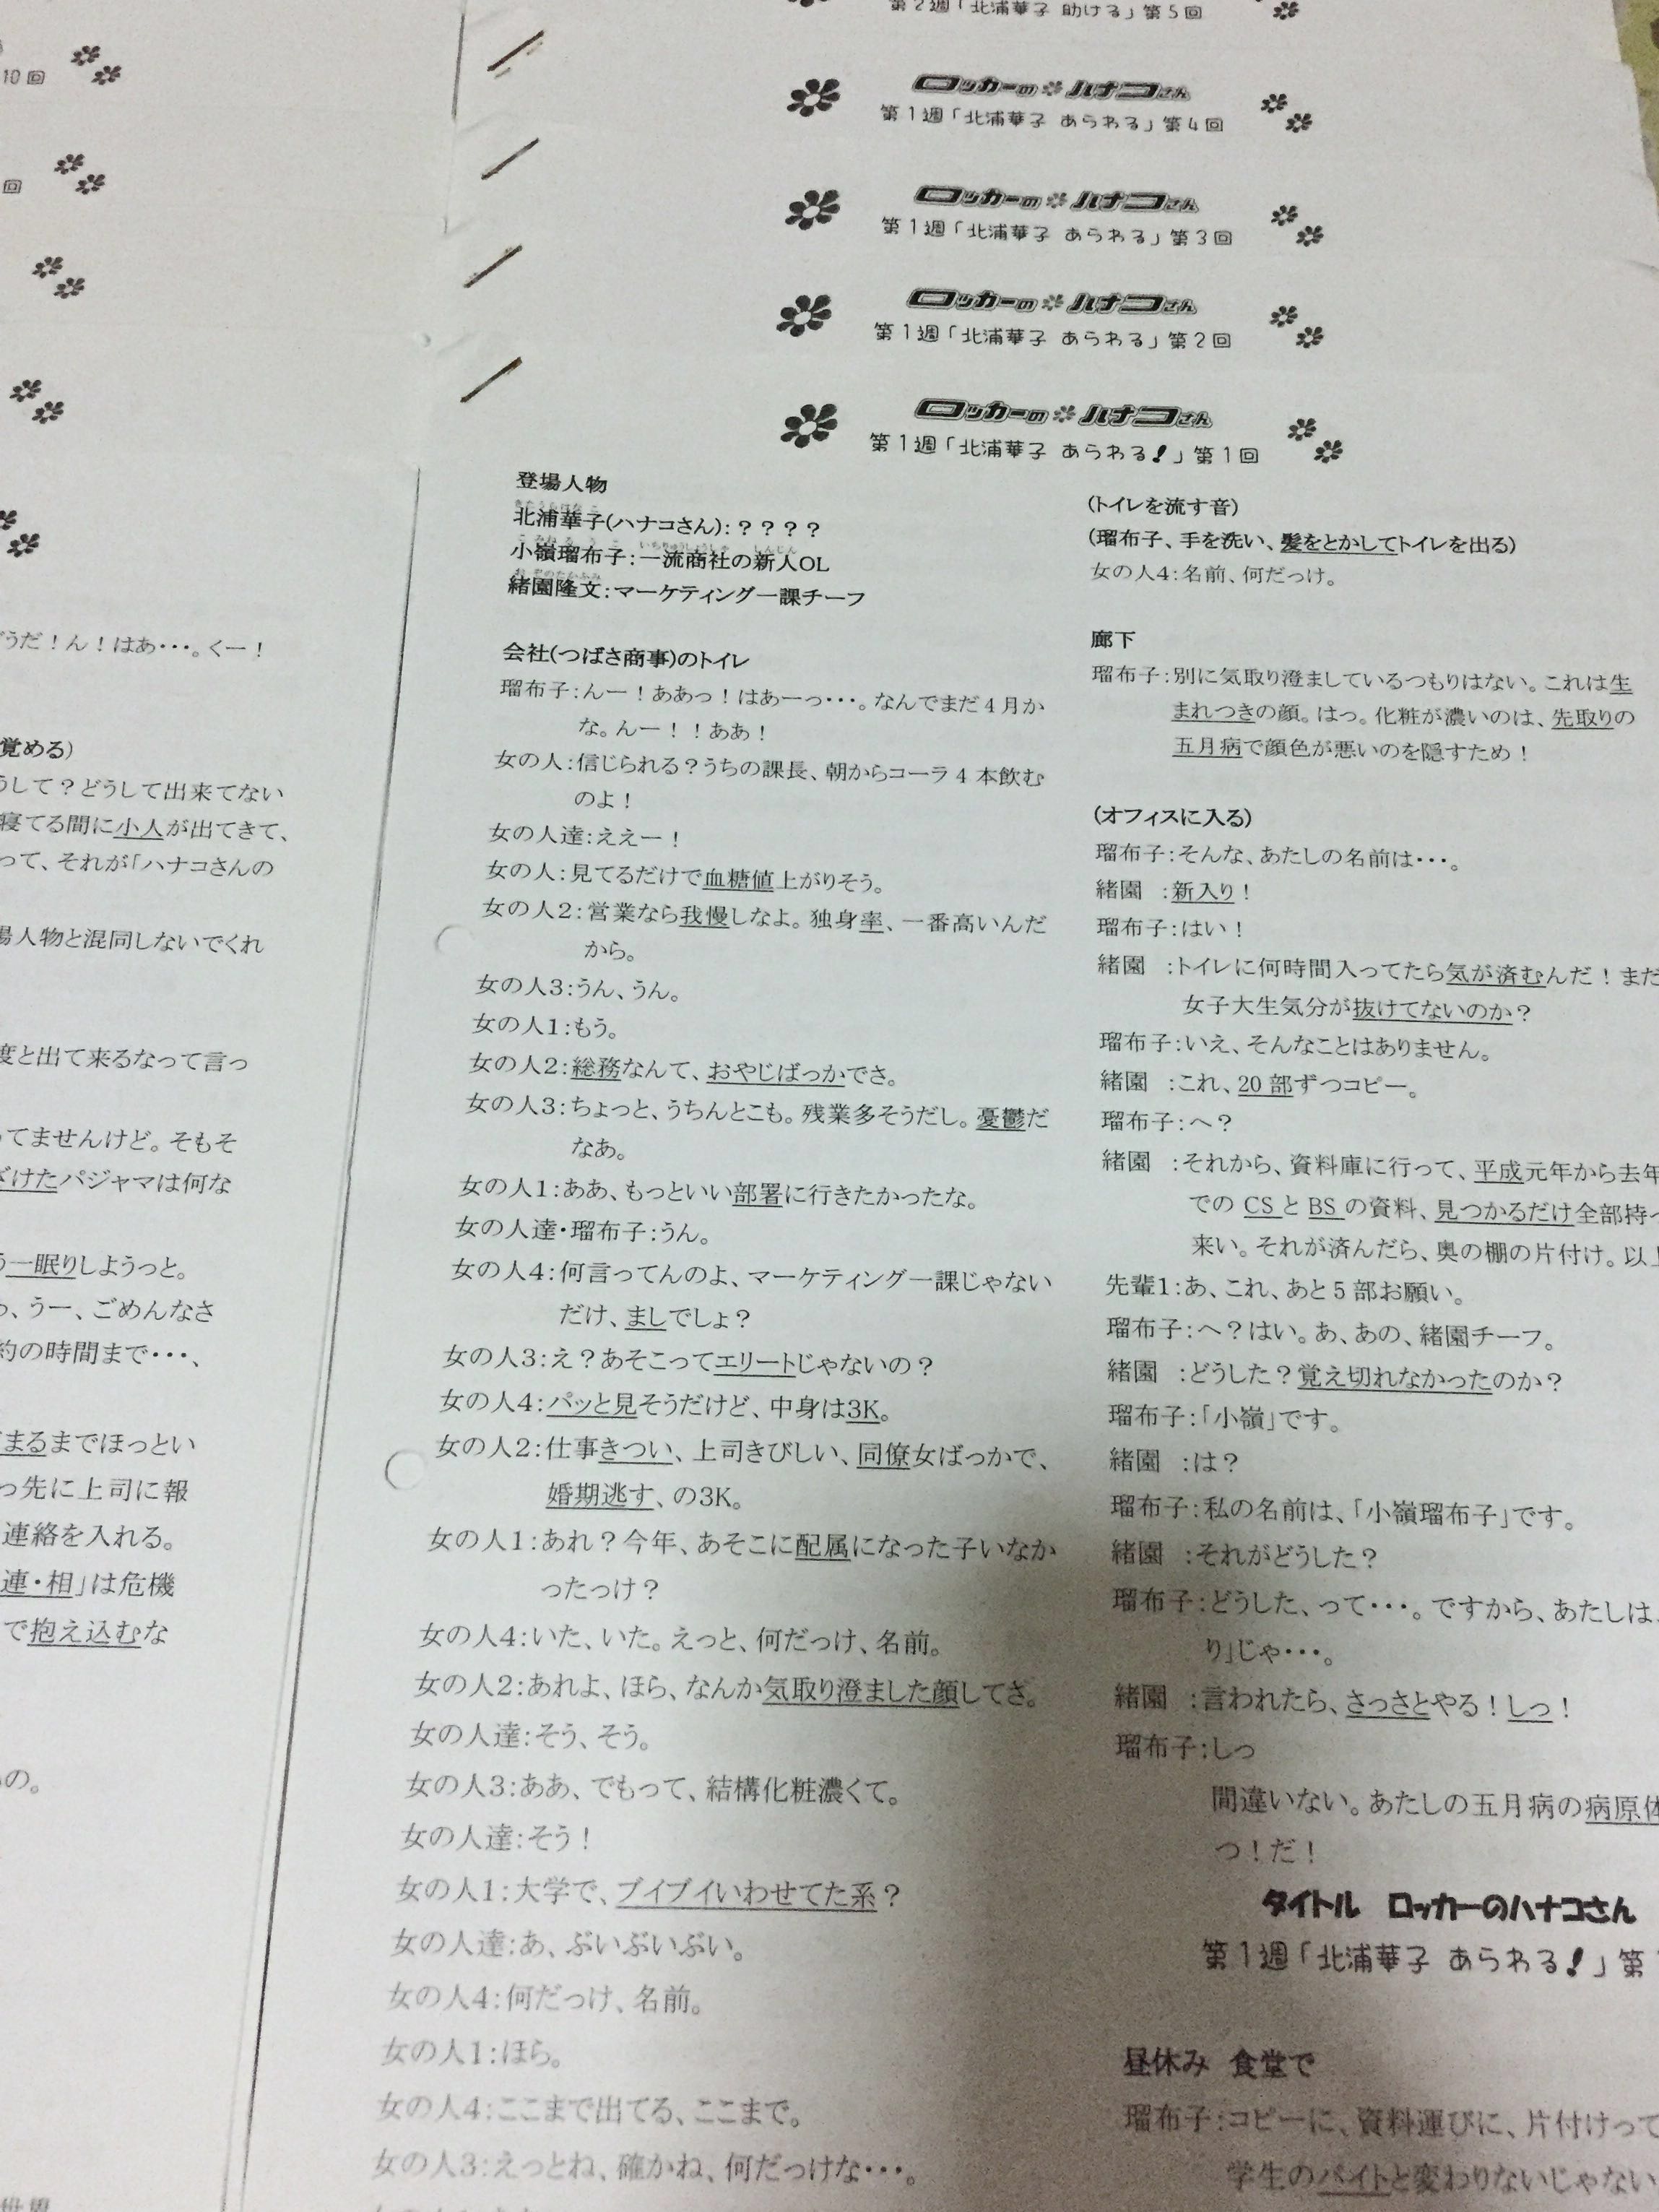 ロッカーのハナコさん Further Advance Japanese Notes Drama Scripts Books Stationery Textbooks Professional Studies On Carousell